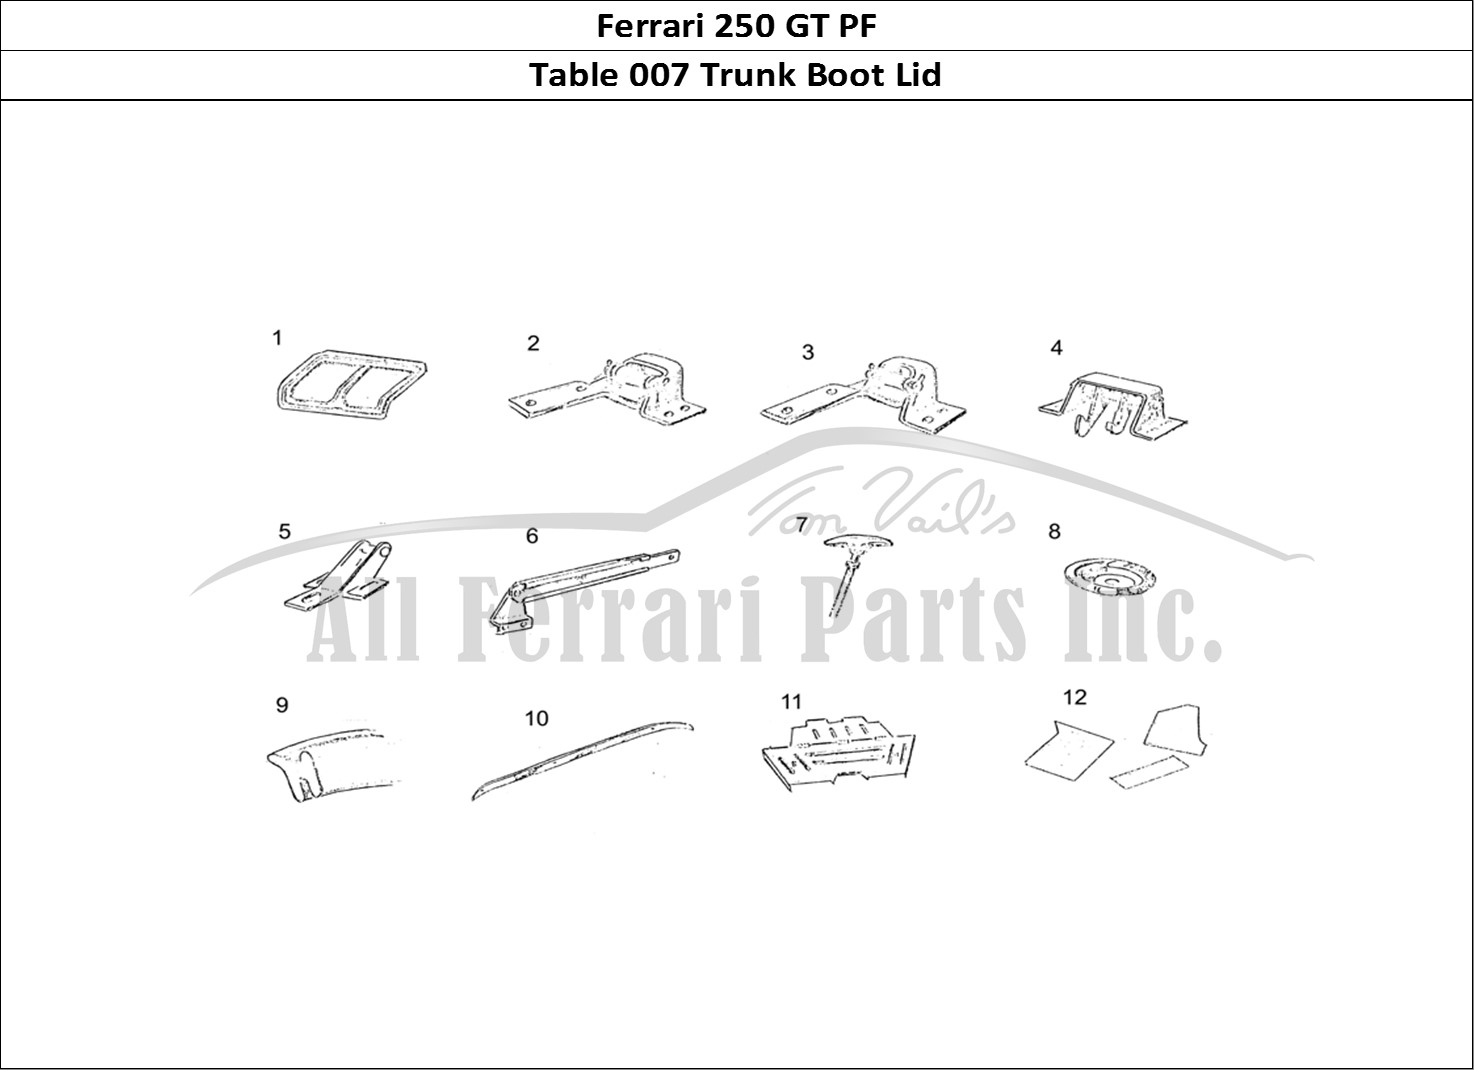 Ferrari Parts Ferrari 250 GT (Coachwork) Page 007 Boot Lid